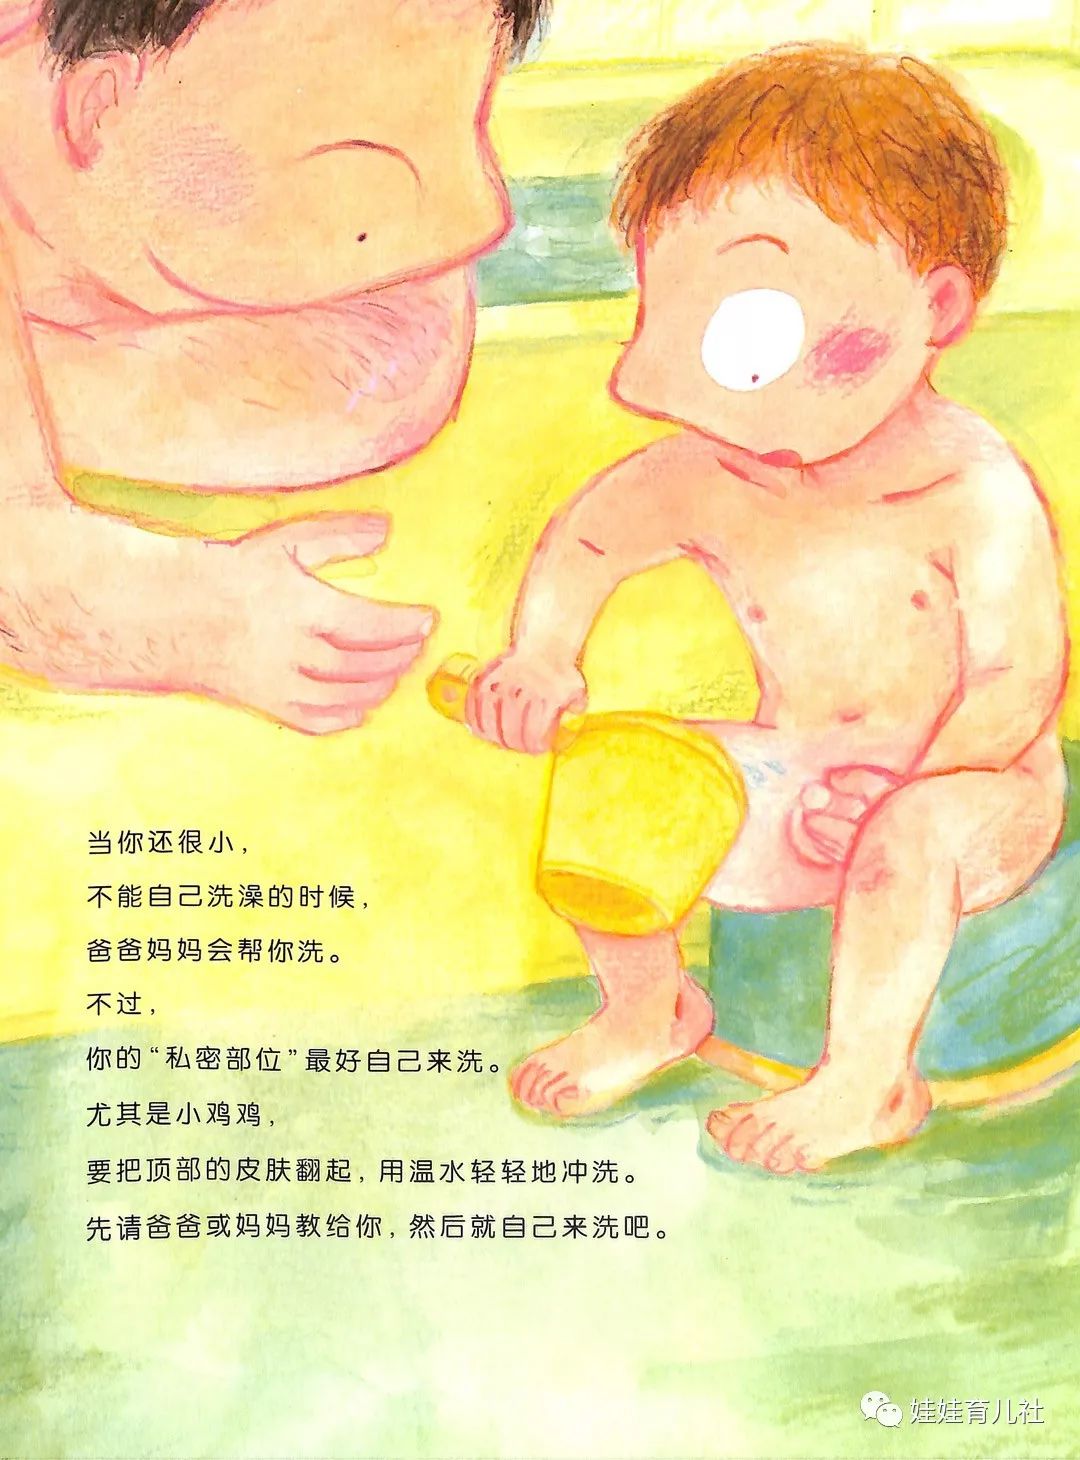 《小鸡鸡的故事》:正视儿童性教育,用温柔的语言,告诉他们生命的由来